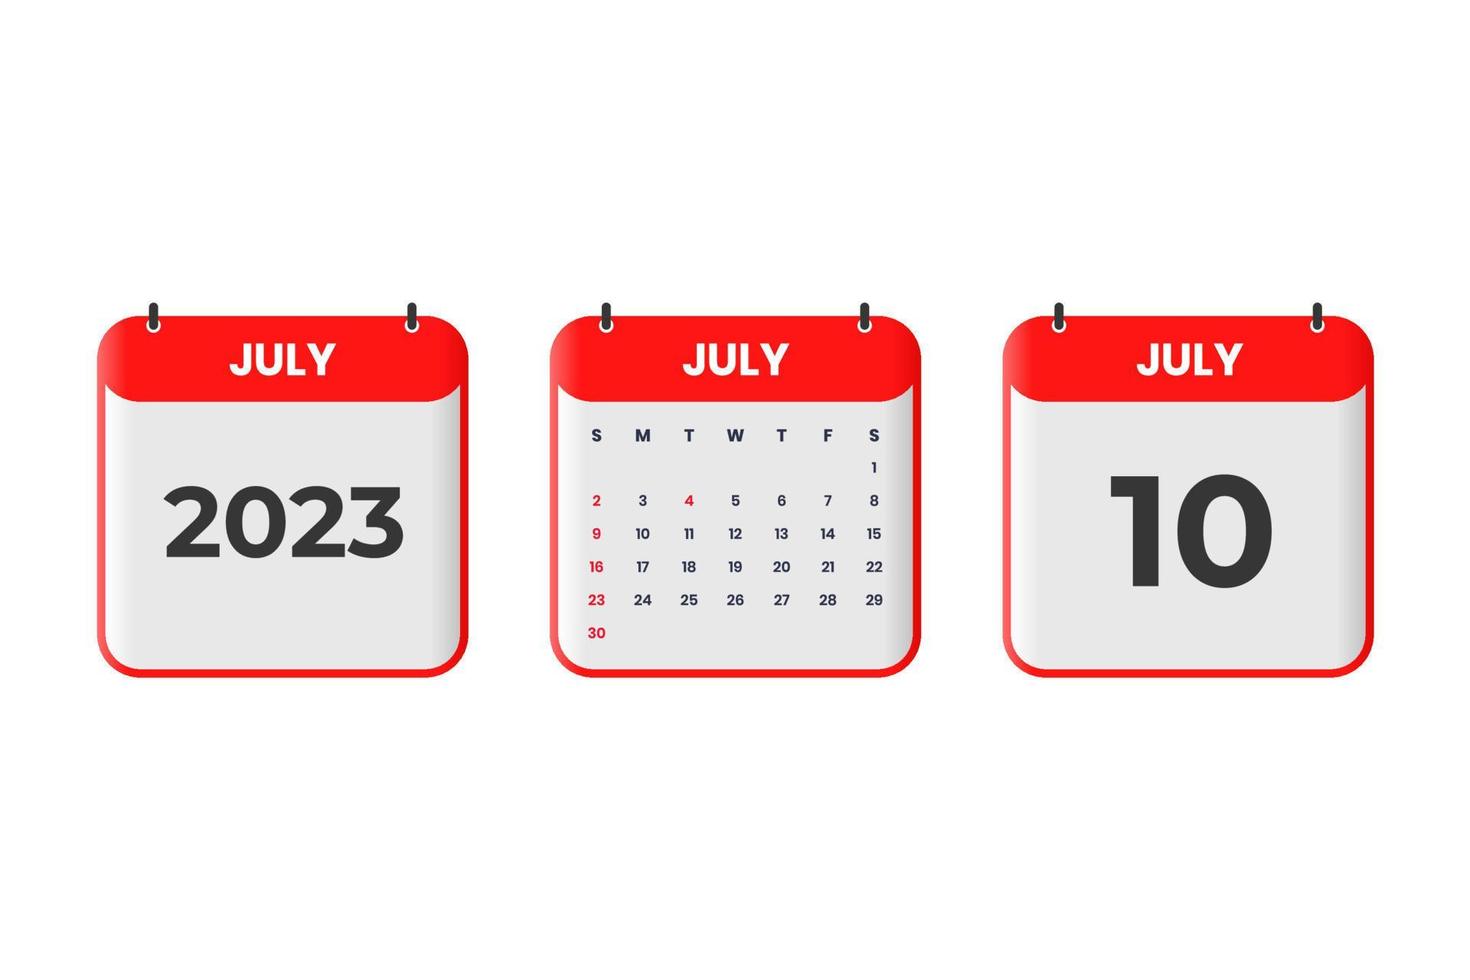 Juli 2023 Kalenderdesign. 10. Juli 2023 Kalendersymbol für Zeitplan, Termin, wichtiges Datumskonzept vektor